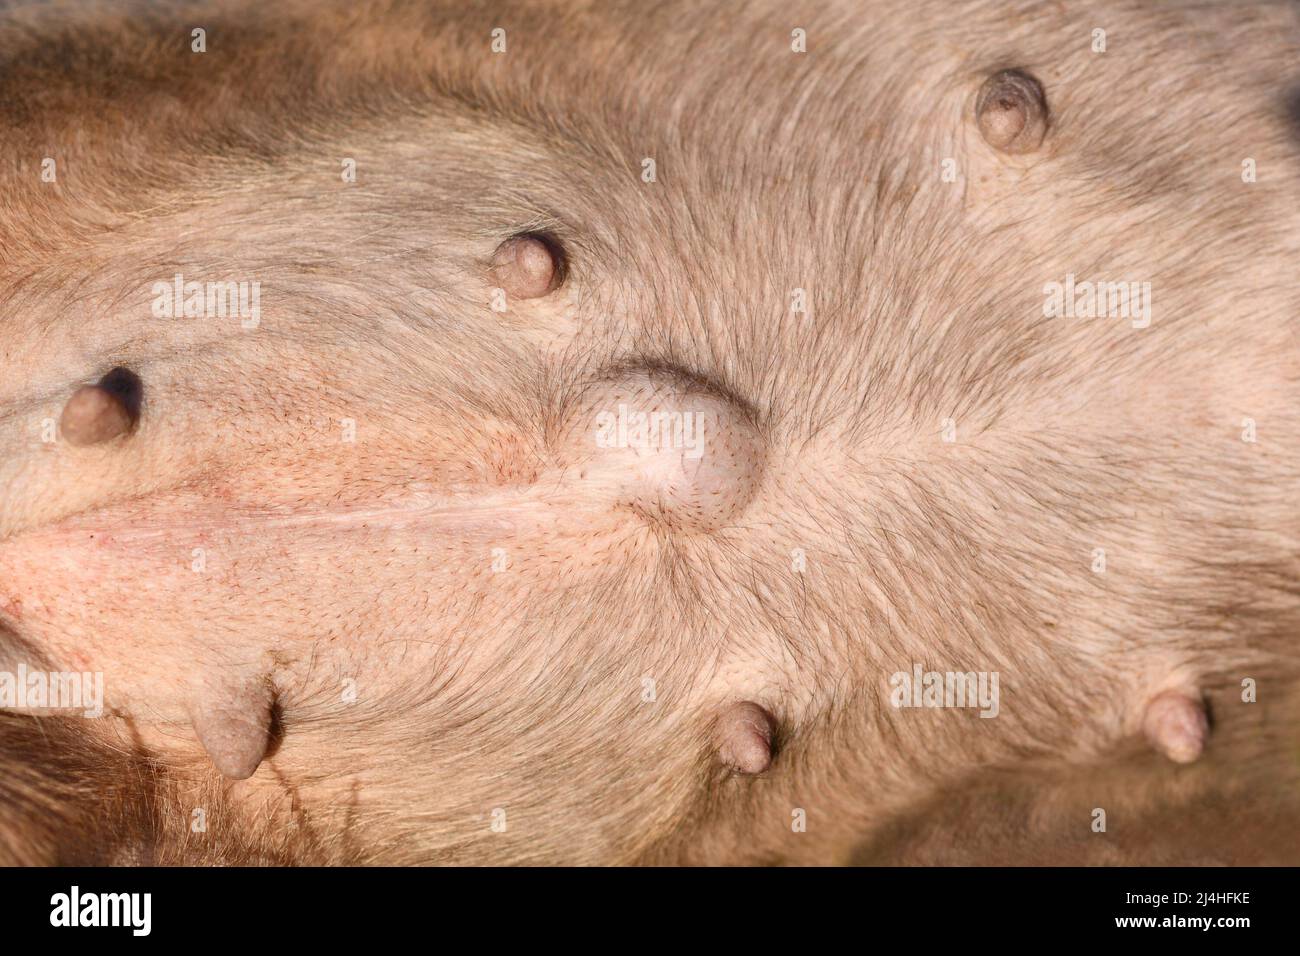 Ernia ombelicale in cane. Ventre Bulldog con protuberanza esterna intorno all'ombelico Foto Stock